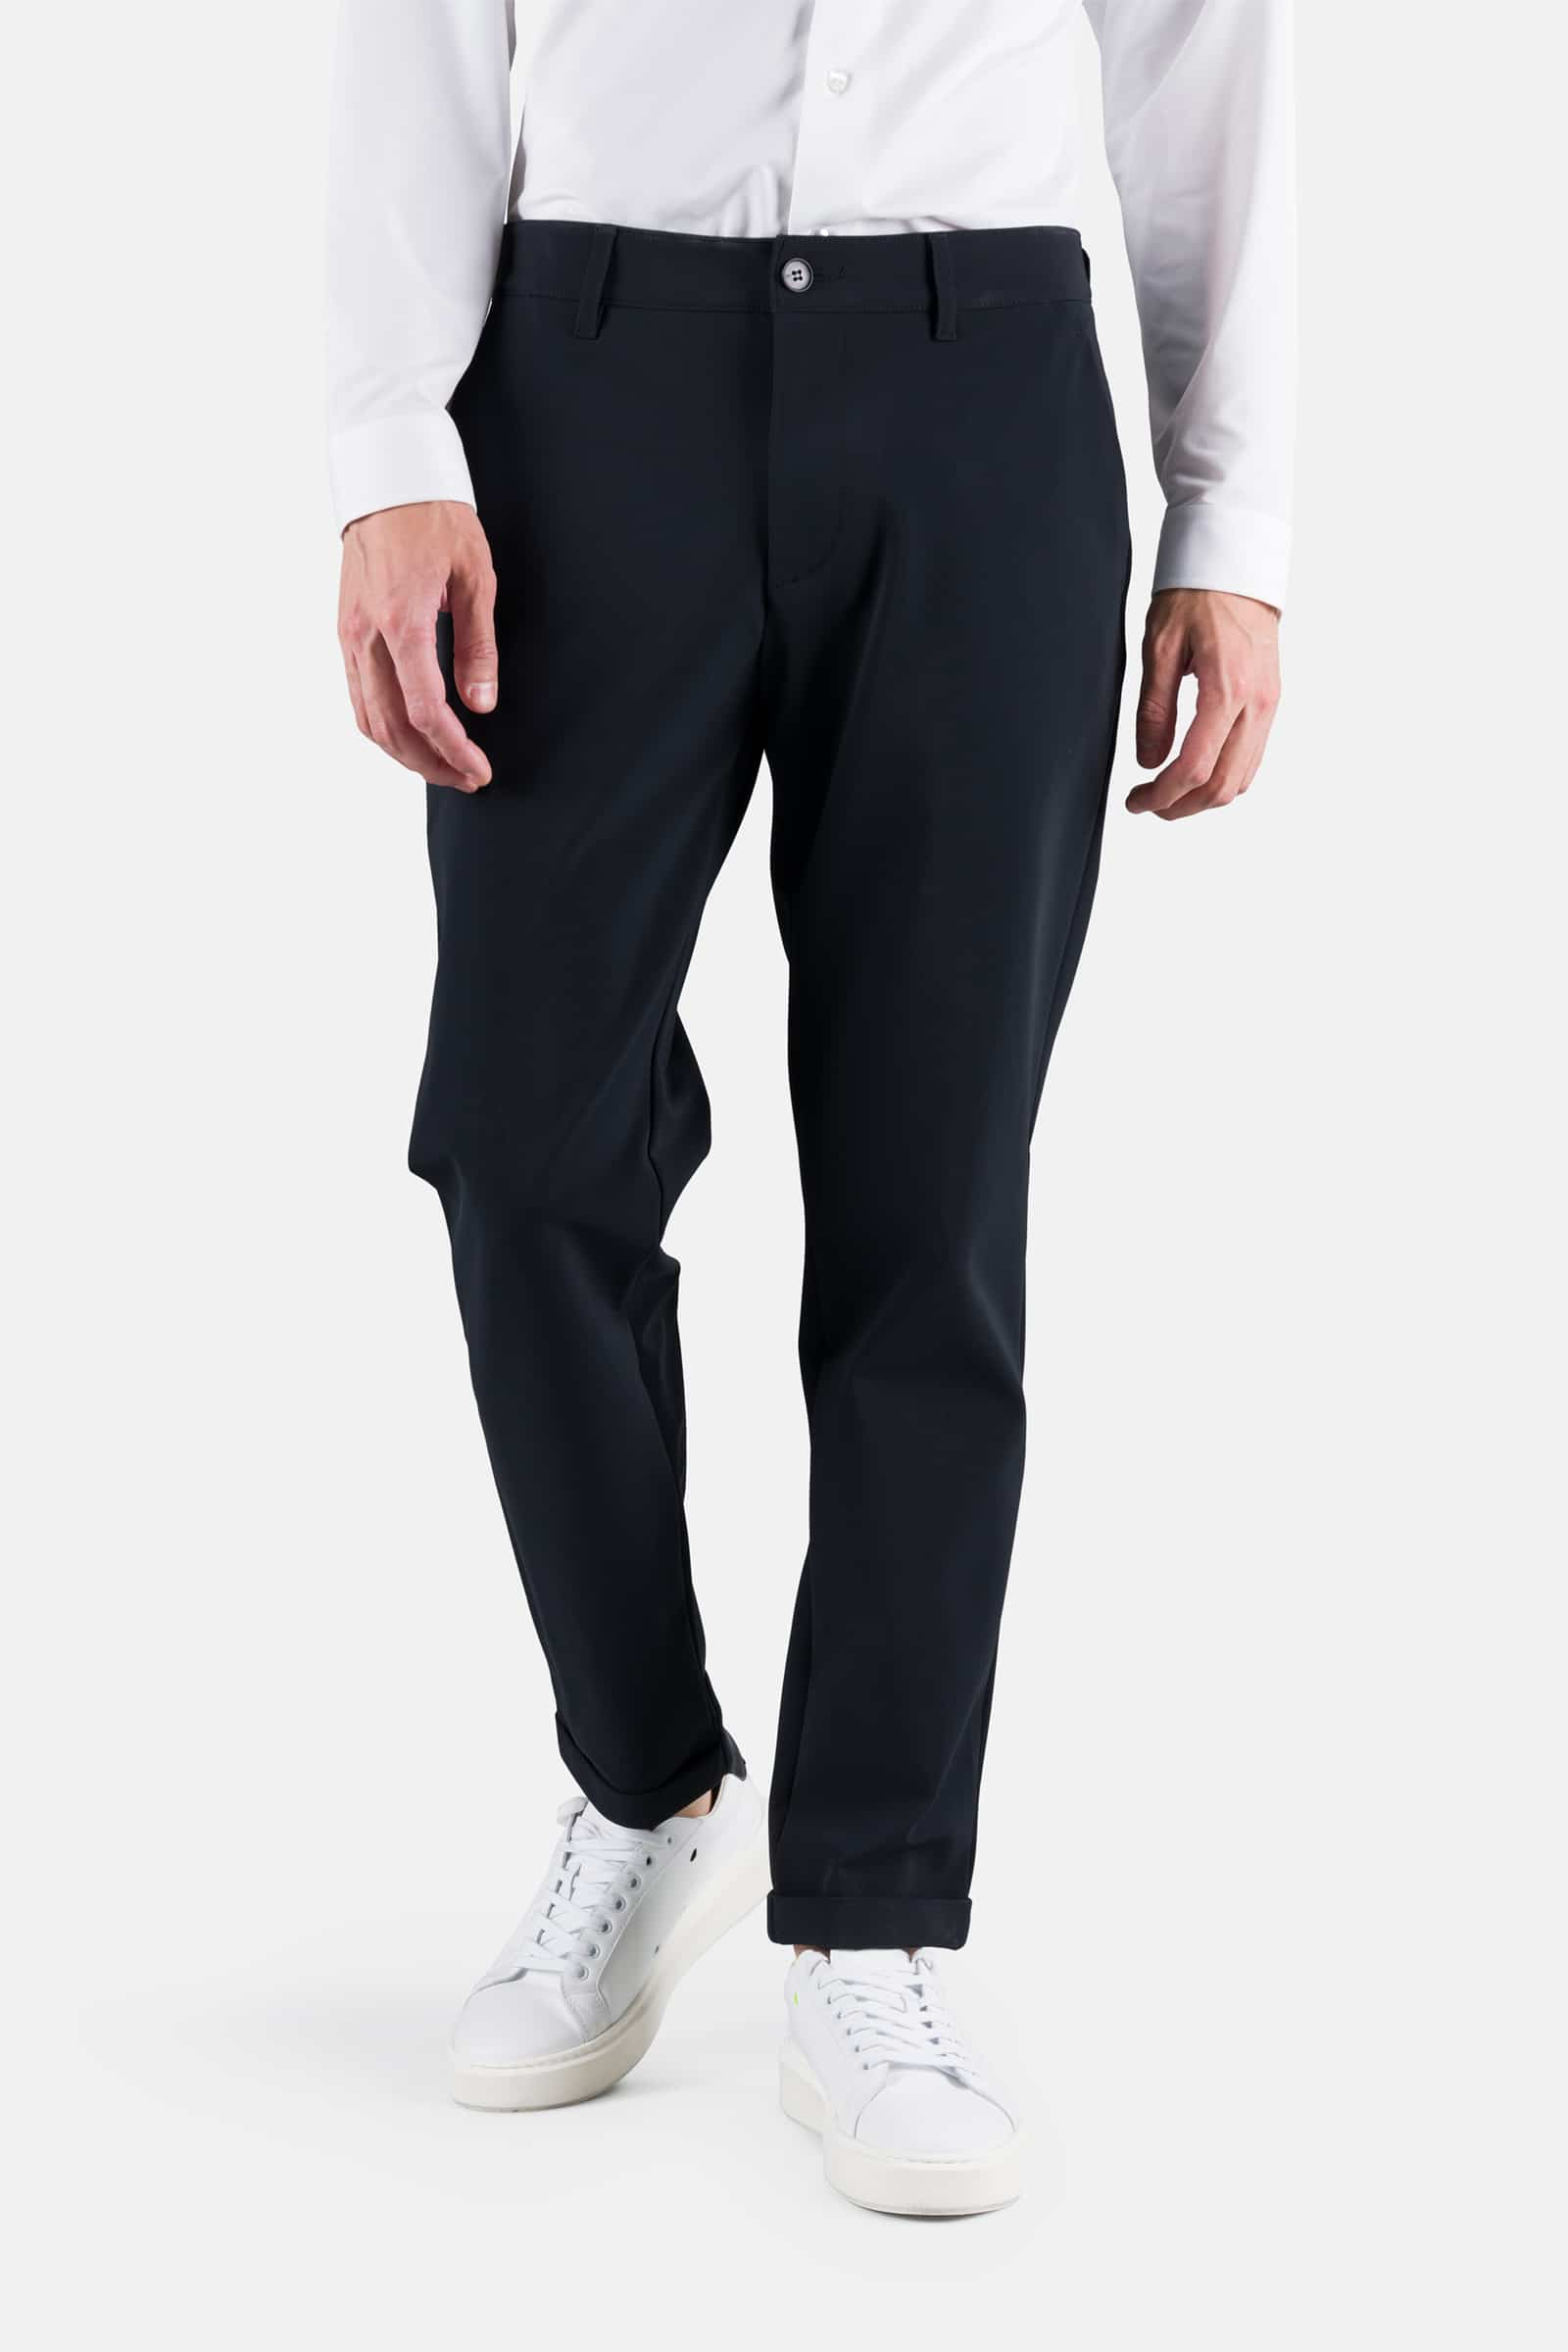 CLASSIC PANTS - BLACK CHECK - Hydrogen - Luxury Sportwear